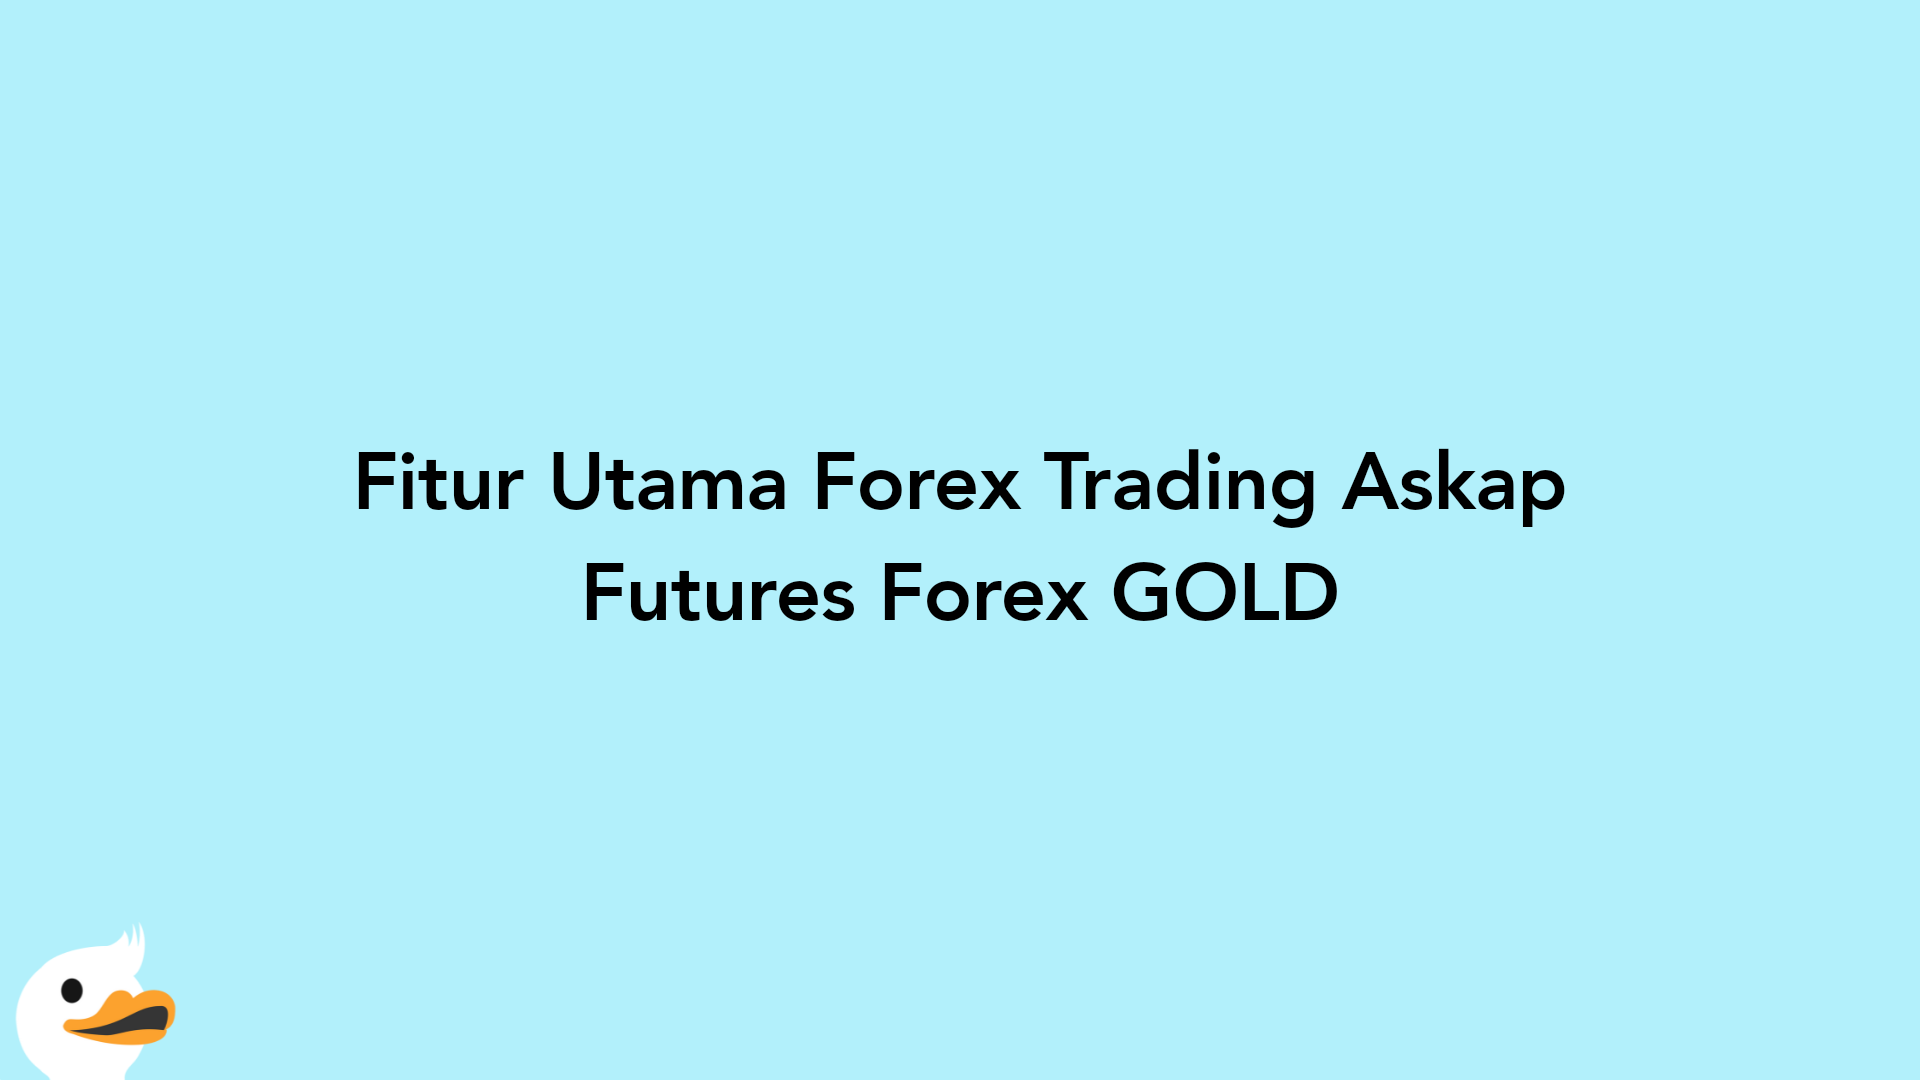 Fitur Utama Forex Trading Askap Futures Forex GOLD